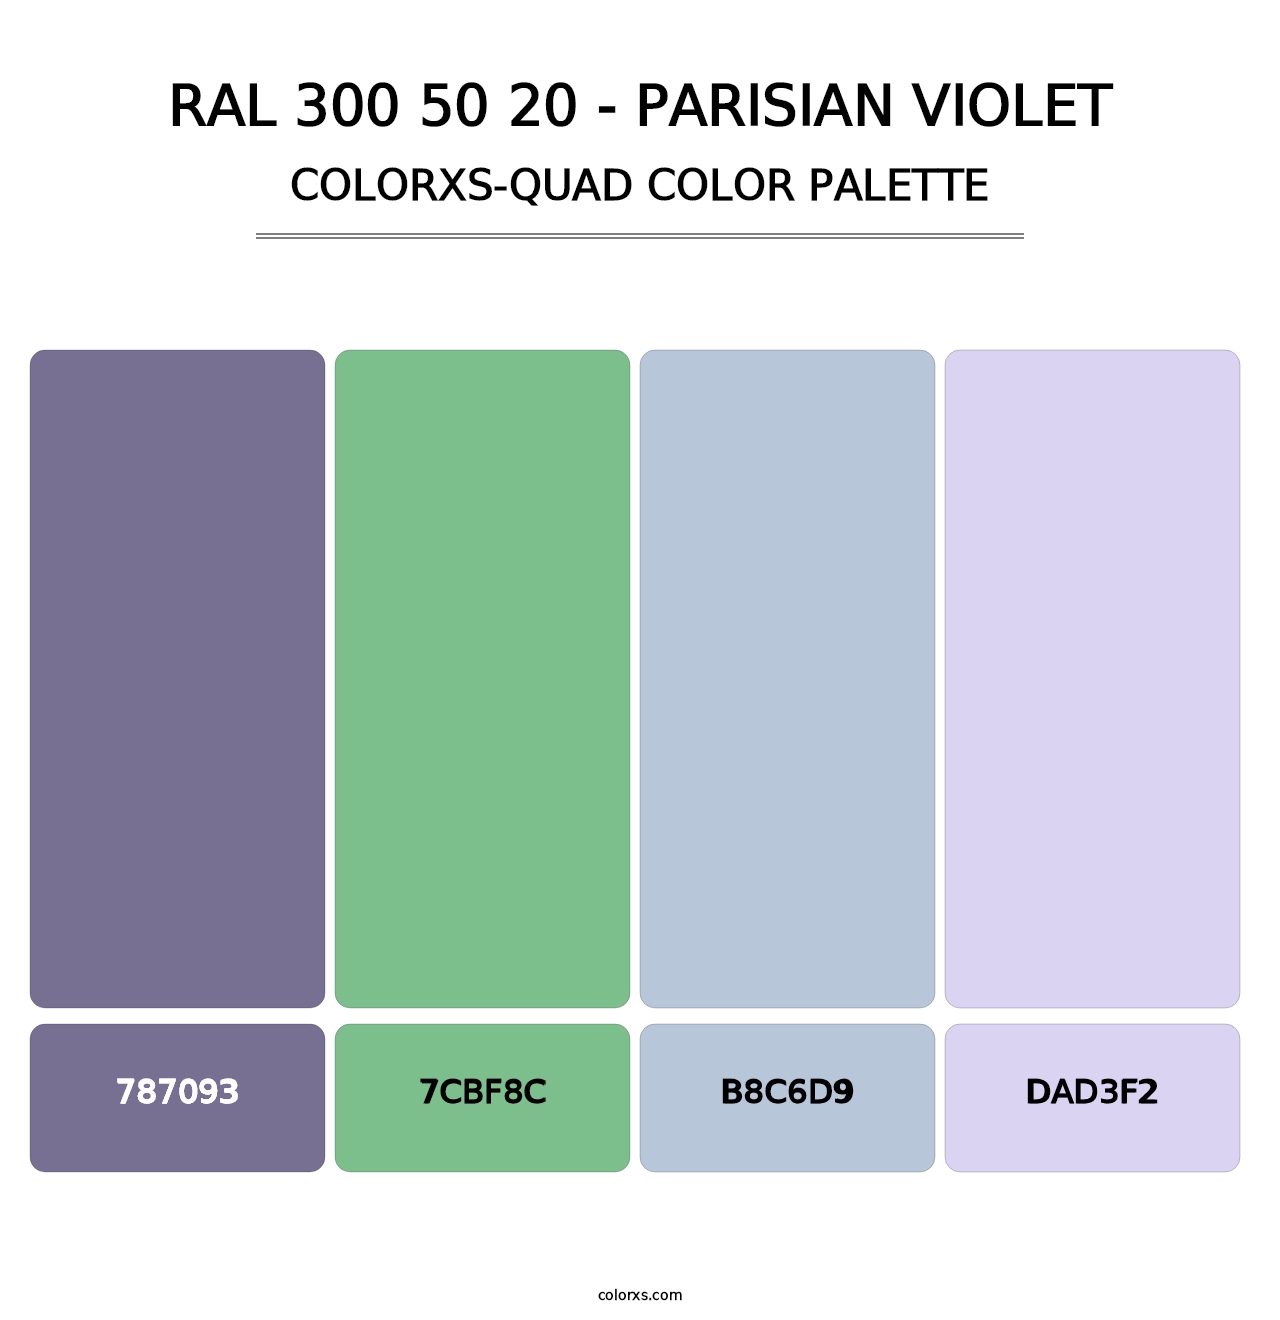 RAL 300 50 20 - Parisian Violet - Colorxs Quad Palette